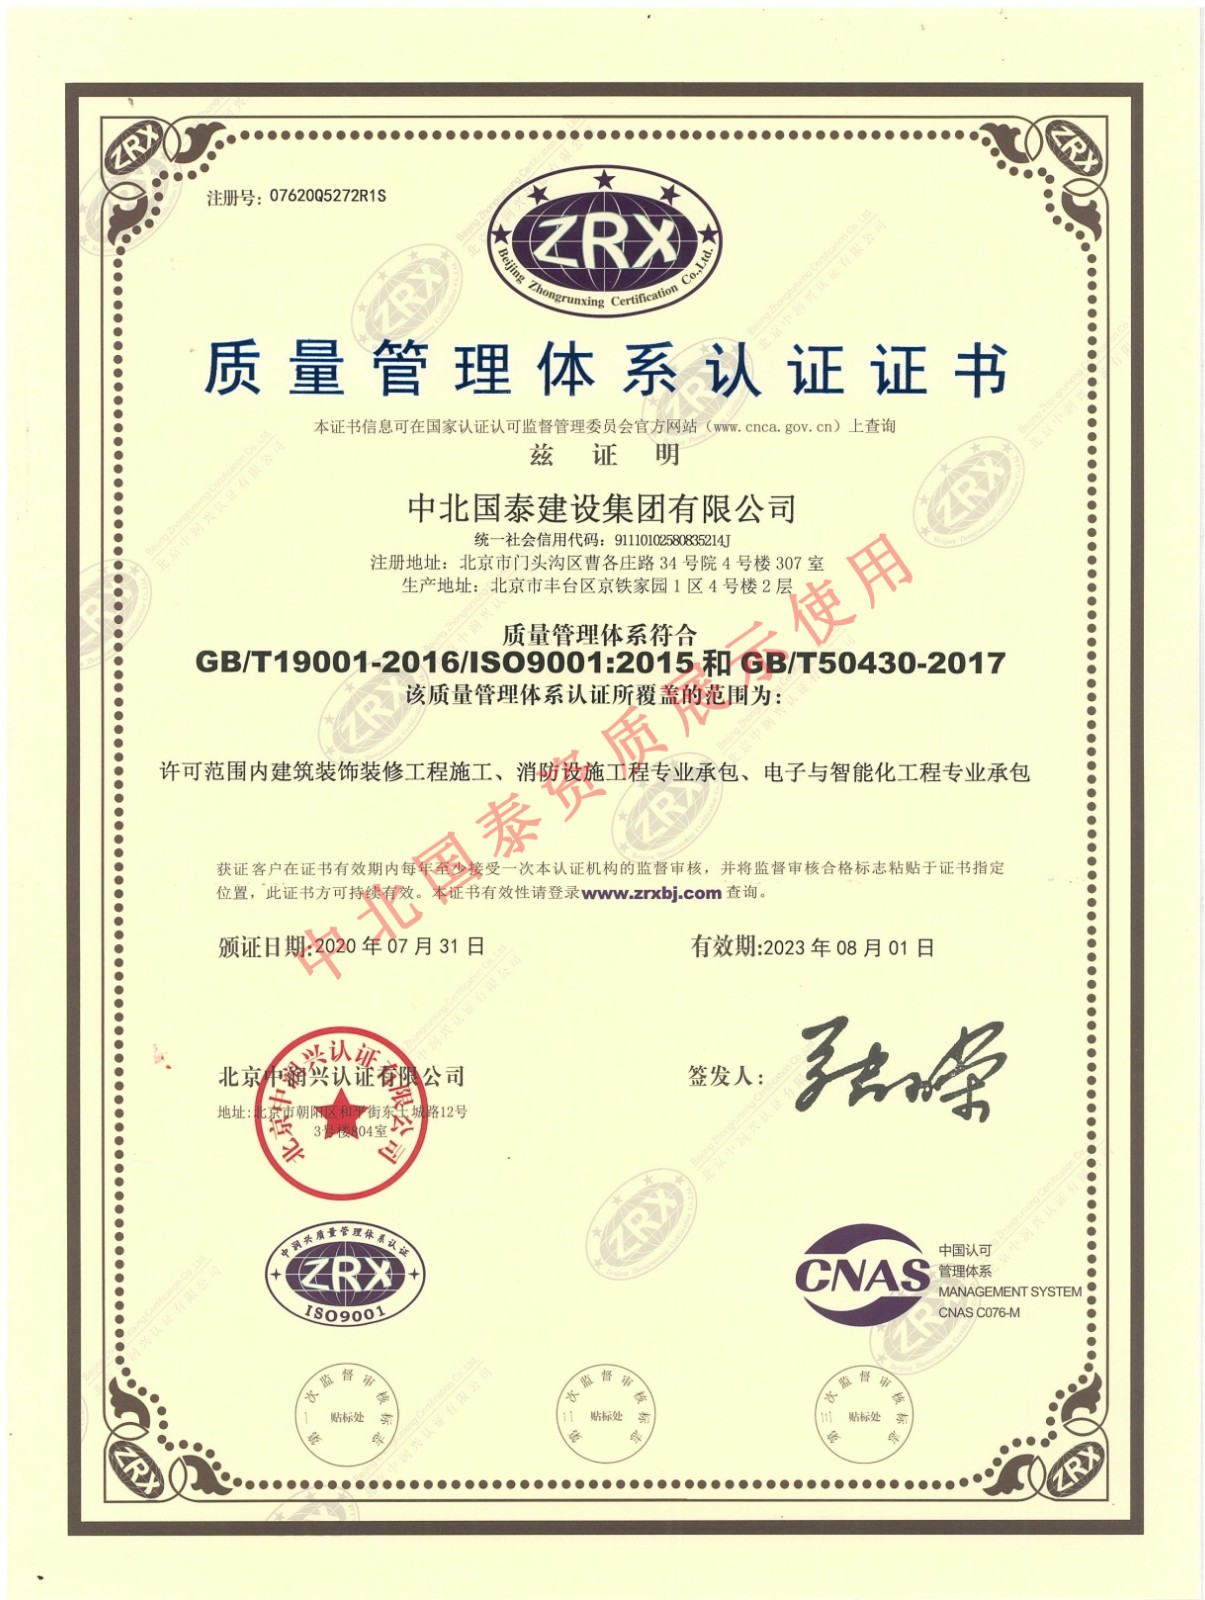 澳门尼威斯人质量管理体系认证证书